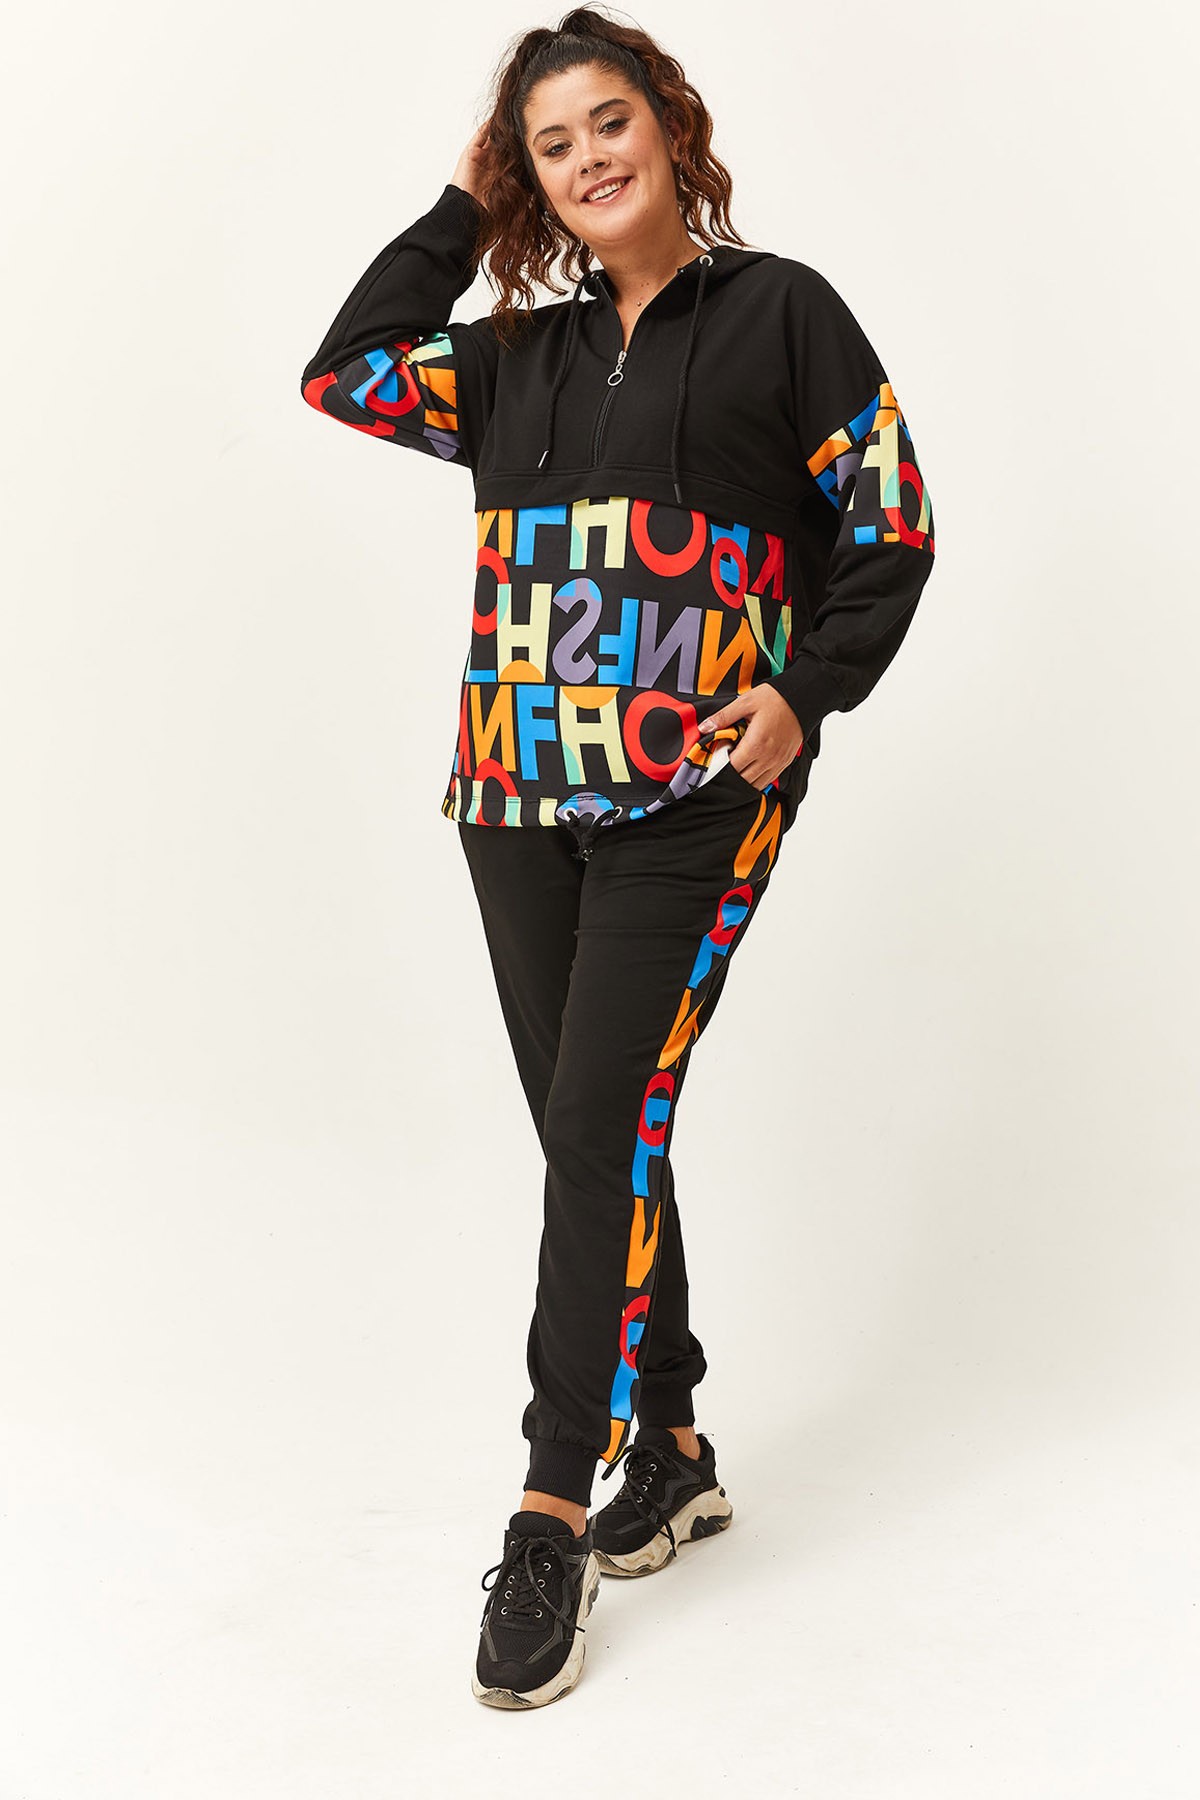 Kadın Büyük Beden Renkli Harf Desenli Eşofman Takımı - Siyah